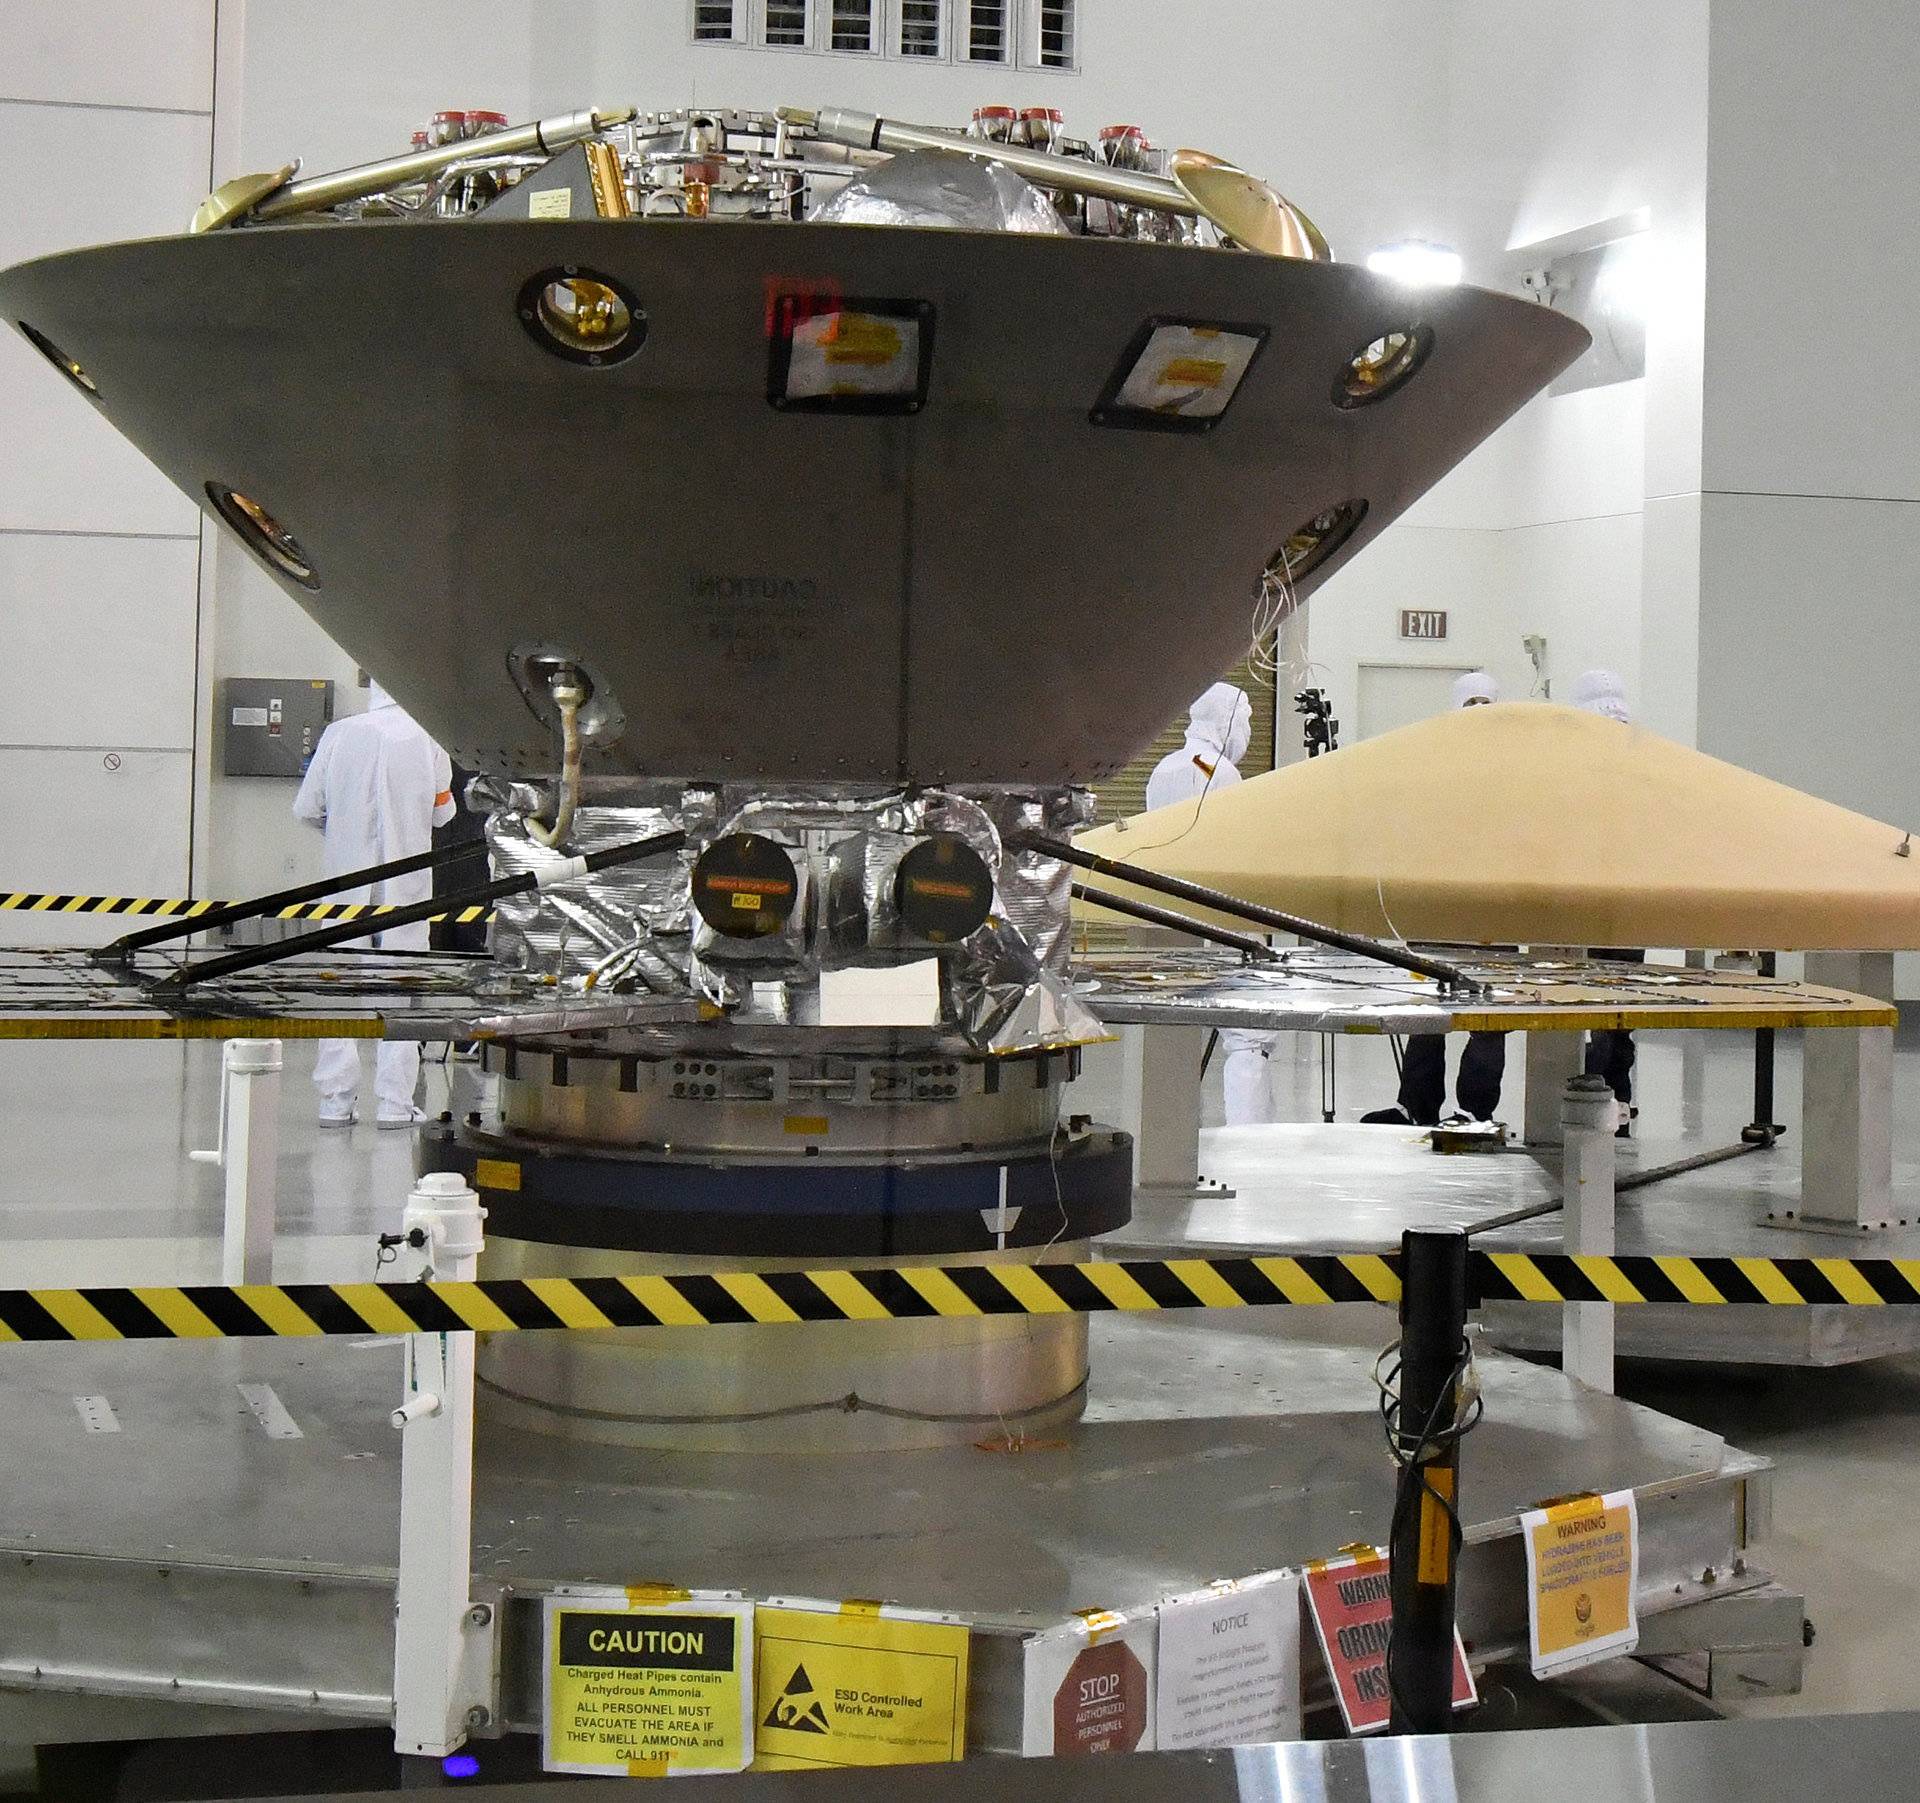 NASAâs InSight spacecraft, destined for the Elysium Planitia region located in Marsâ northern hemisphere, undergoes final preparations at Vandenberg Air Force Base